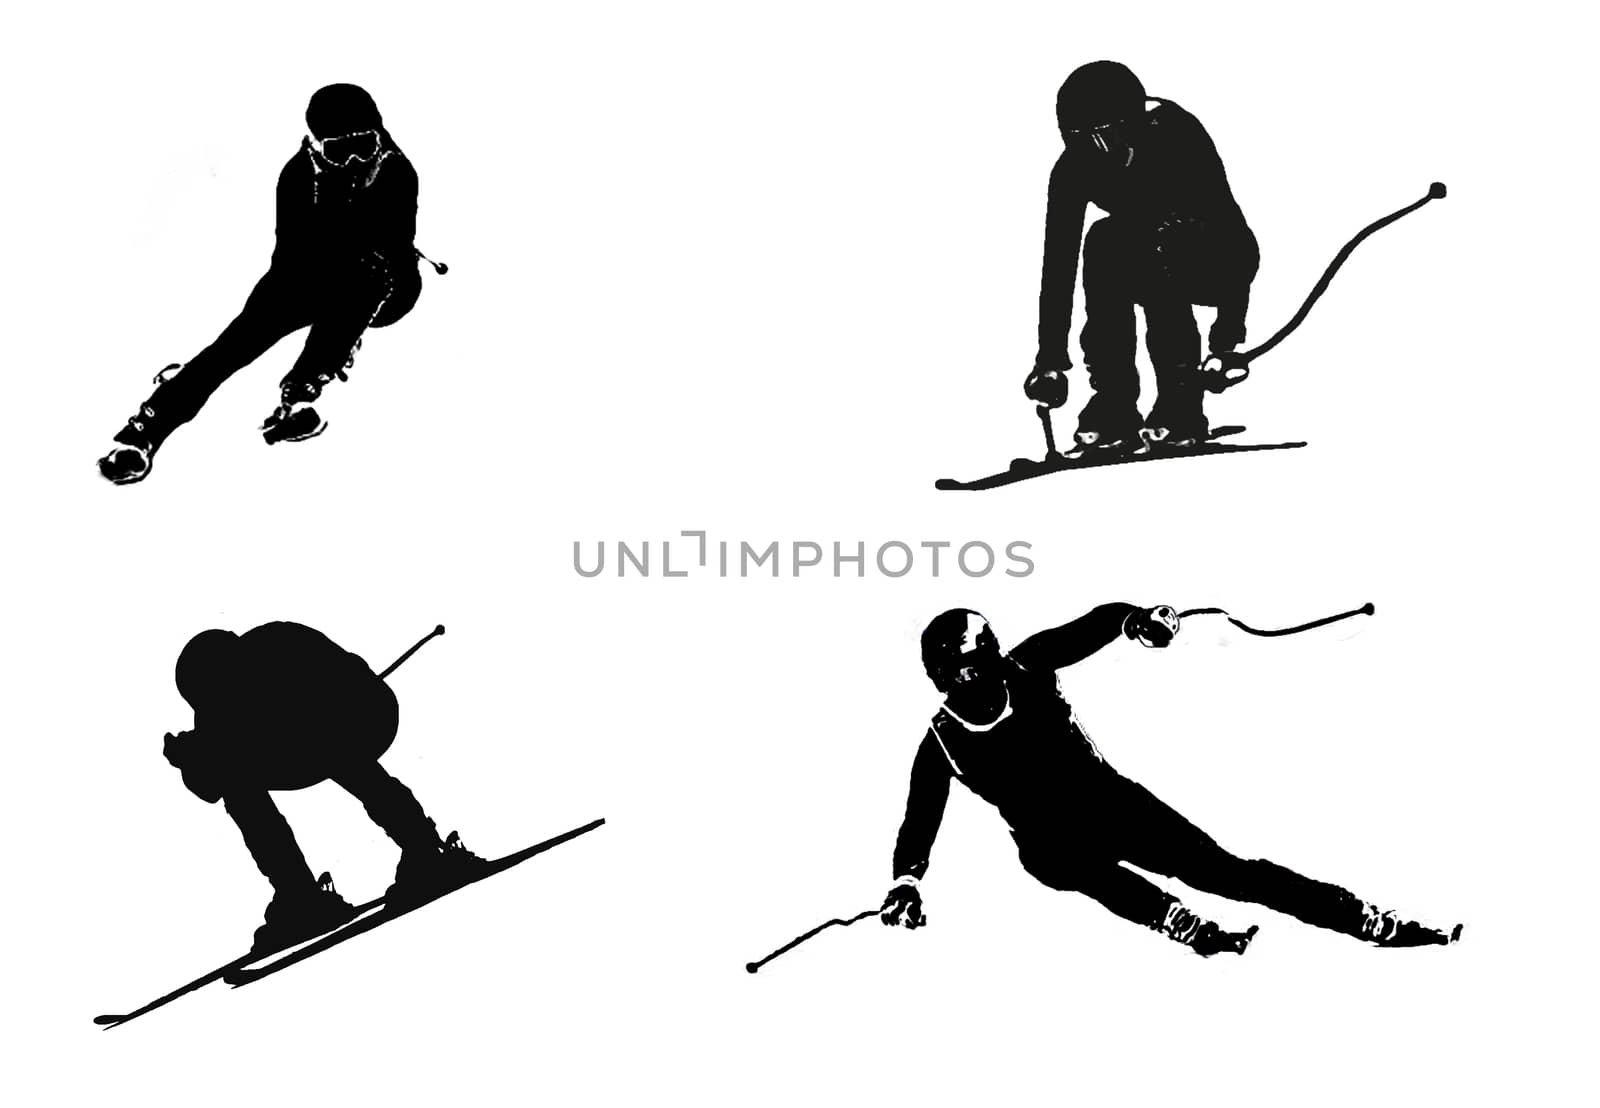 Skiing technique by viktor.micevski@rocketmail.com